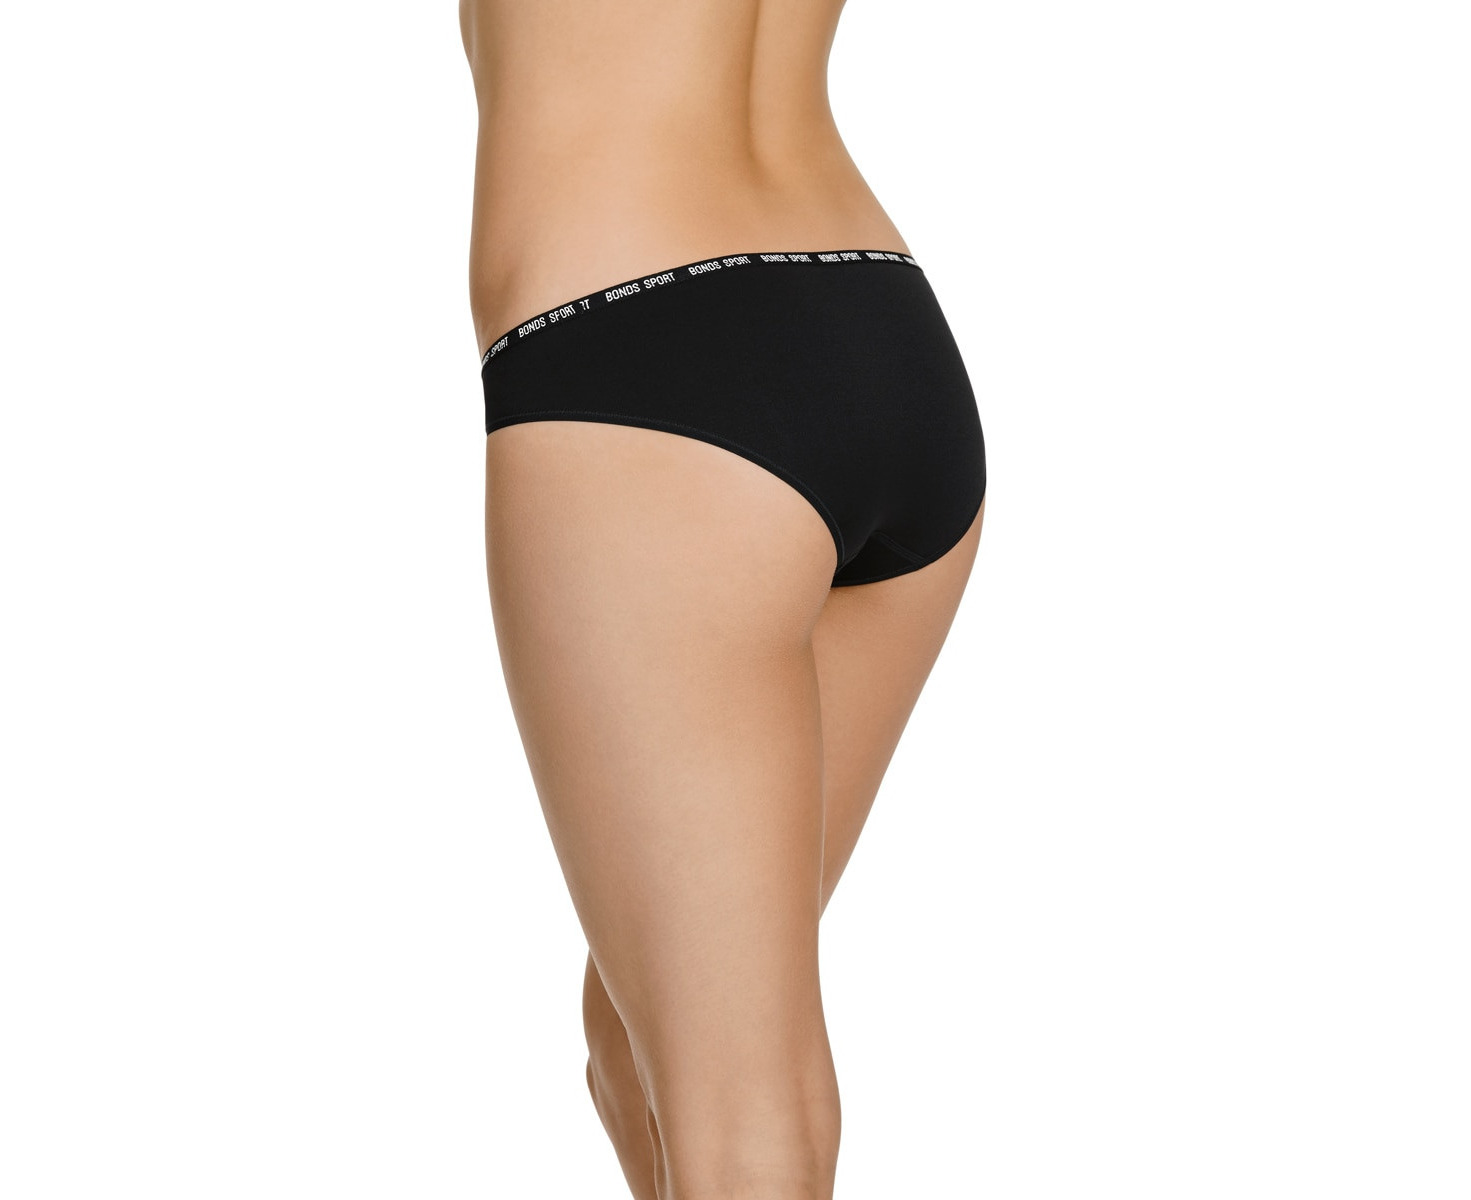 6 X Bonds Womens Active Seamless Bikini Sport Undies Underwear